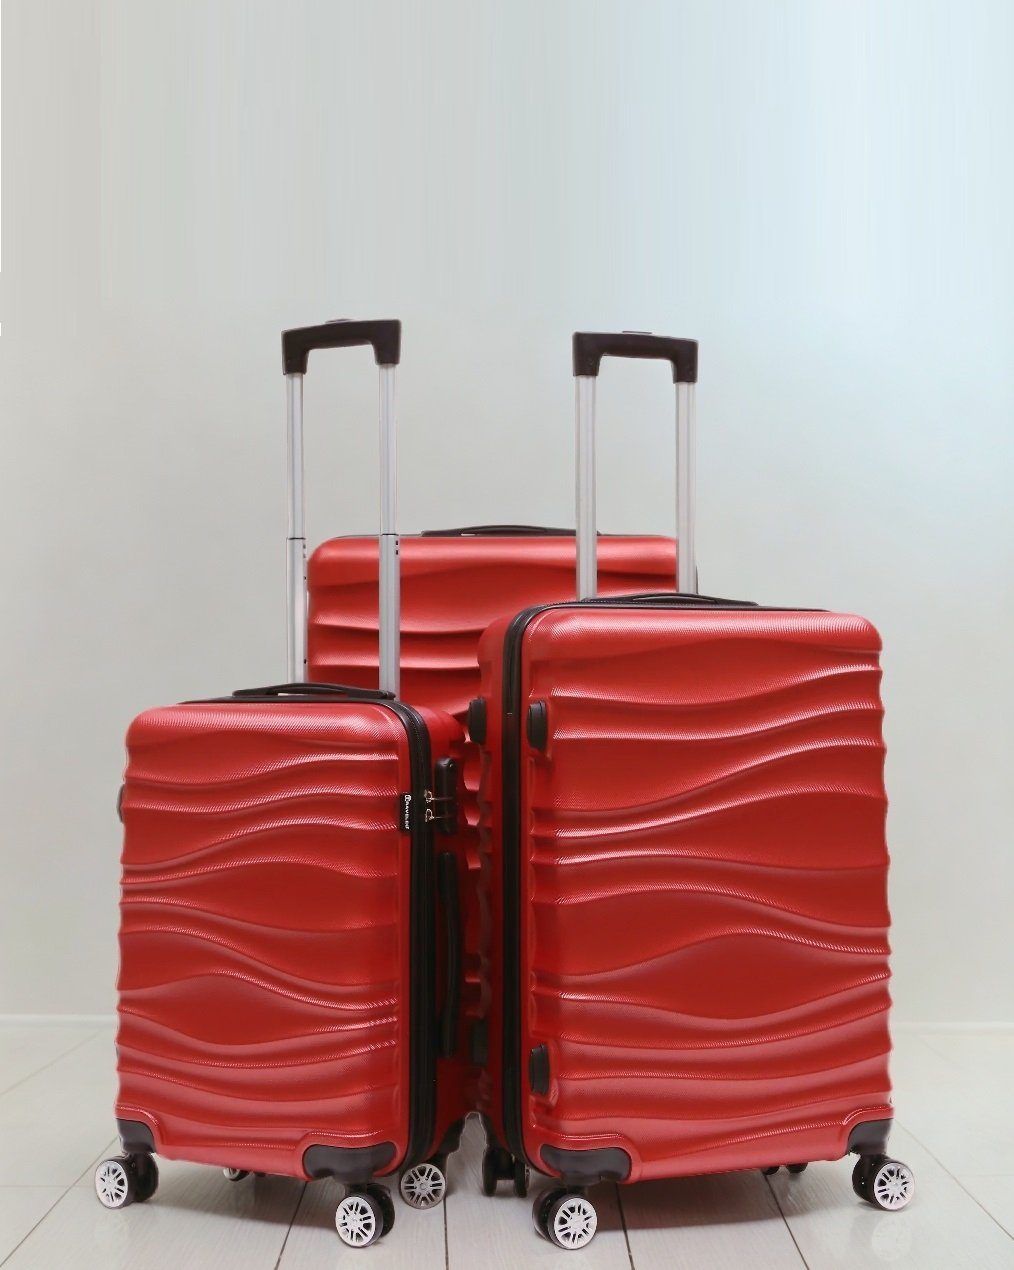 (3 Reisekoffer Kofferset Koffer tlg Rot Reisetasche, Gepäck Hartschale Trolley Cheffinger 3 tlg)